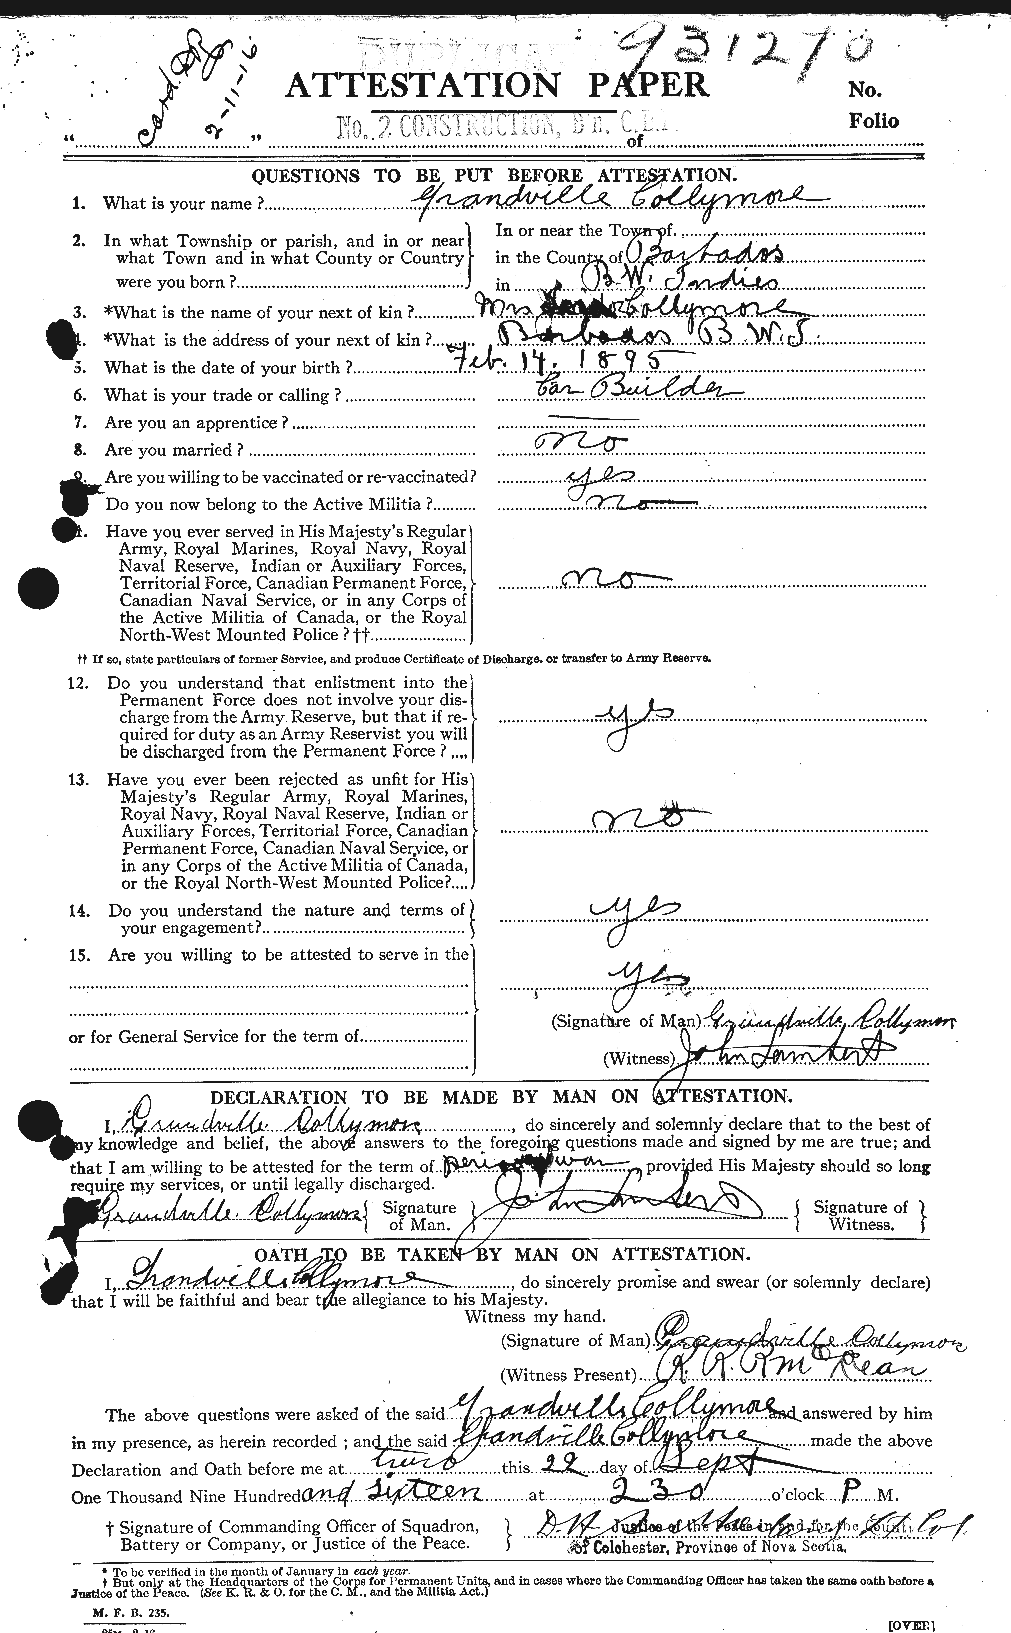 Dossiers du Personnel de la Première Guerre mondiale - CEC 067988a